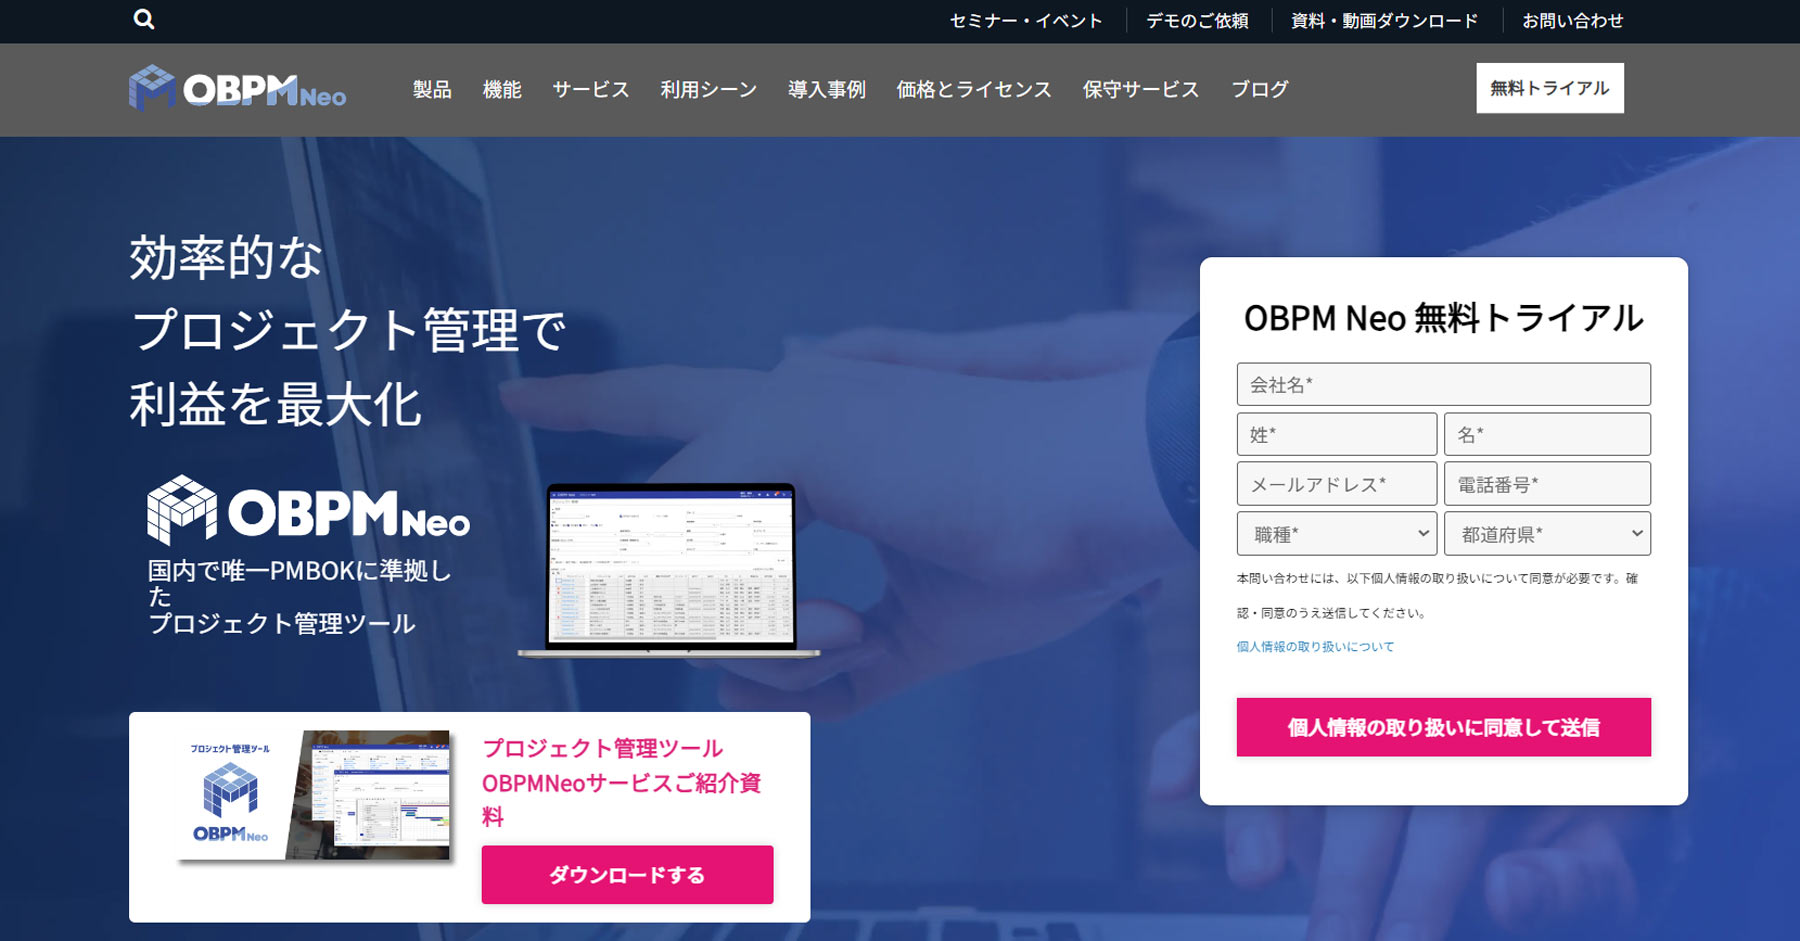 OBPM Neo公式Webサイト